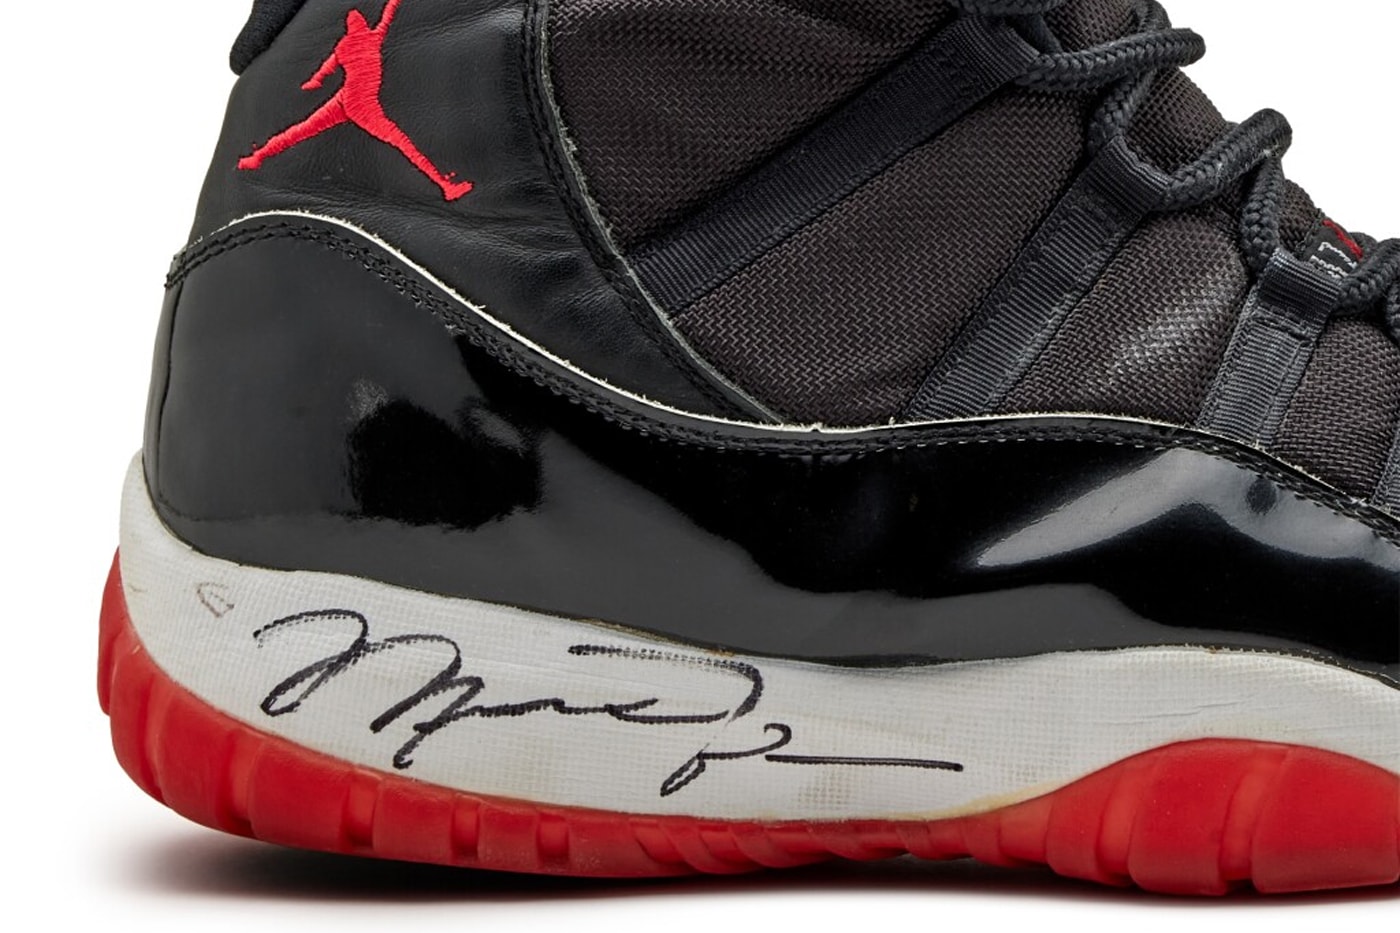 1996年NBAファイナルでマイケル・ジョーダンの着用した Air Jordan 11 が約7,500万円で落札 Michael Jordan 1996 NBA Finals Game Worn and Signed Air Jordan 11s Auction for 482 600 USD sothebys